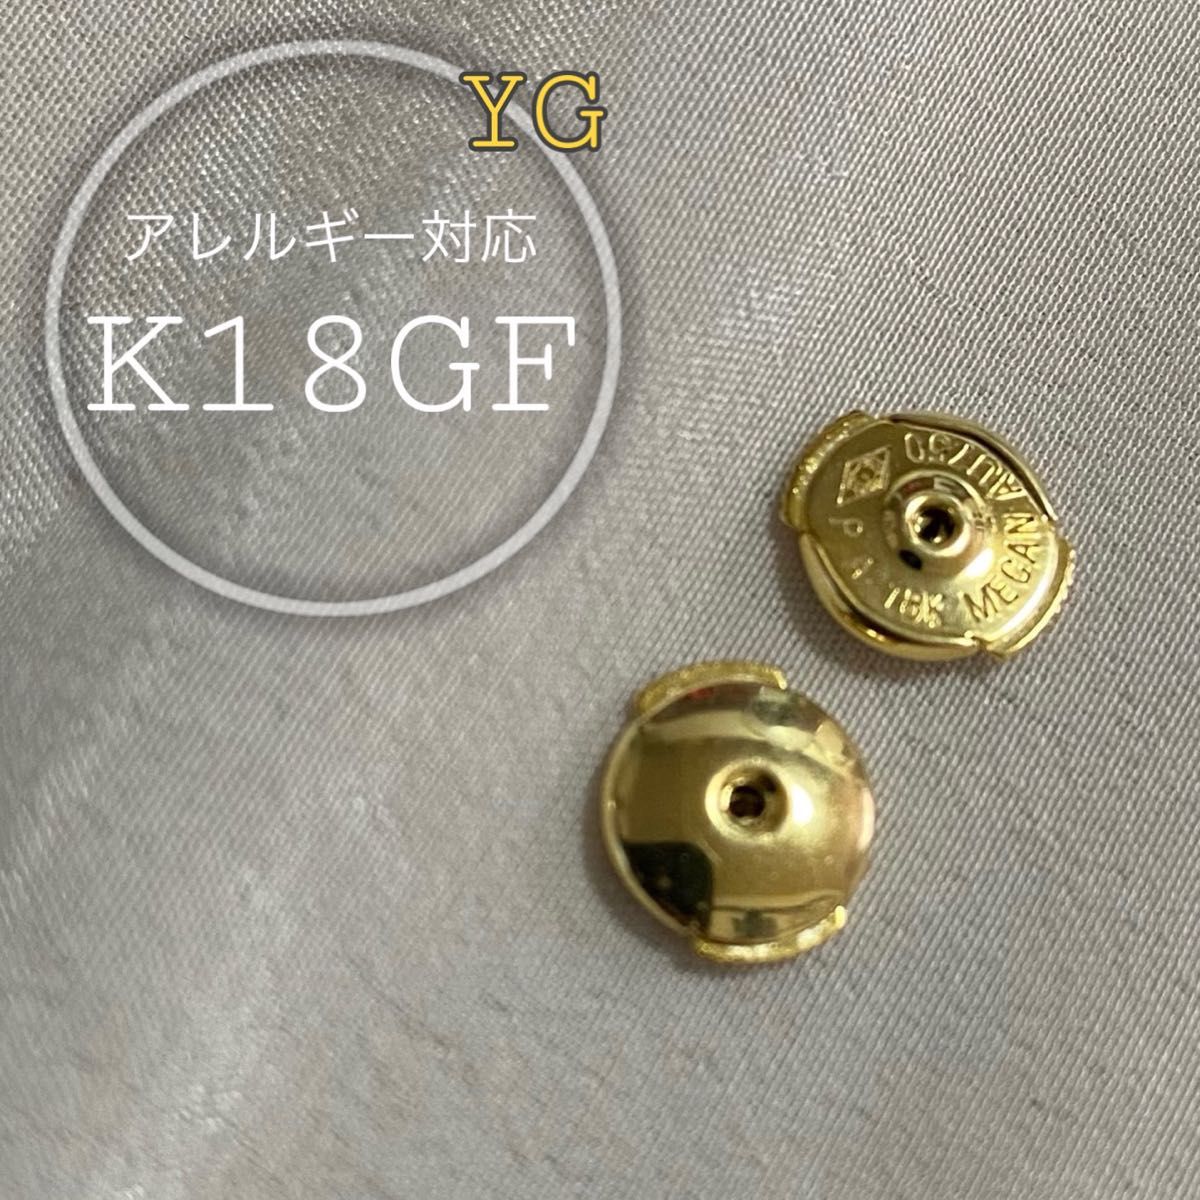 18K ピアス キャッチ ディスク 円盤 刻印 YG スタッド アレルギー対応 ゴールド 18金 K18 金張り S925